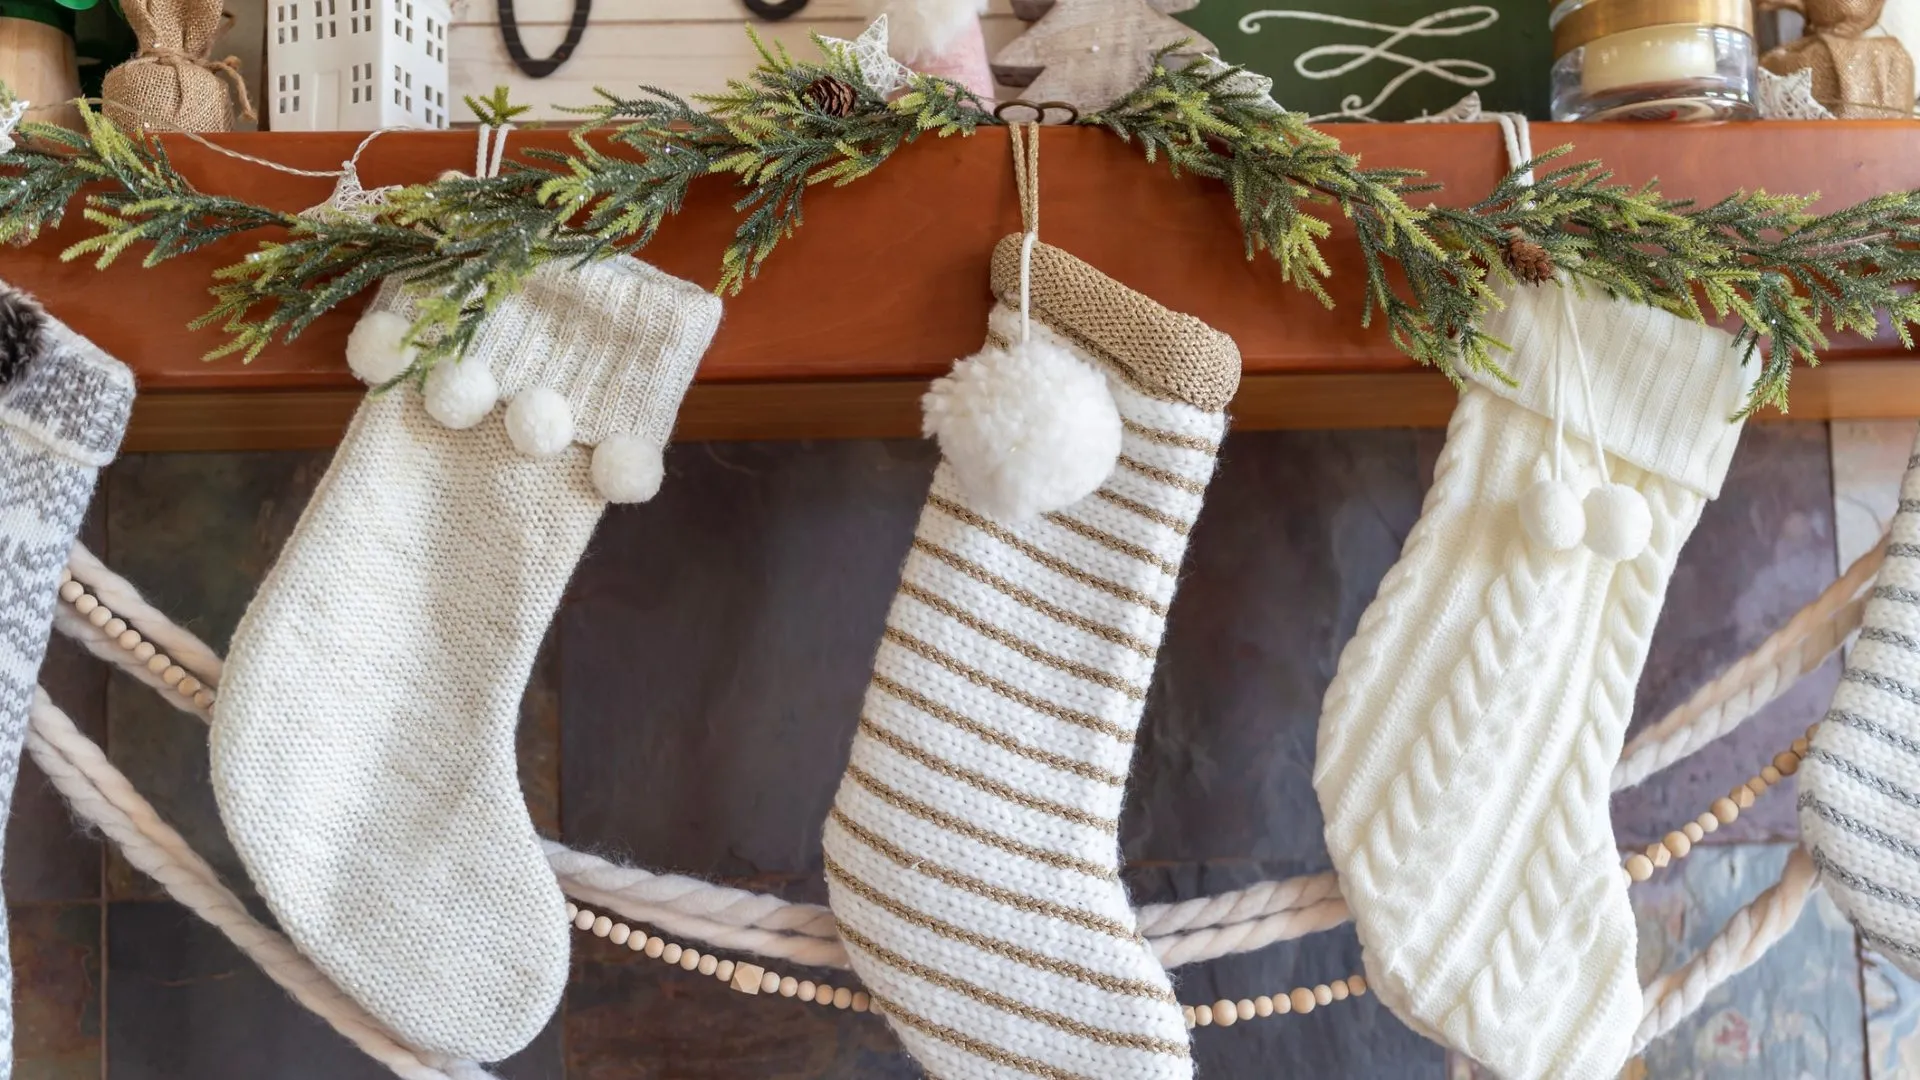 近白色圣诞节长袜和寒假装饰在现代农舍斯堪的纳维亚设计在舒适的家庭起居室壁炉上方。